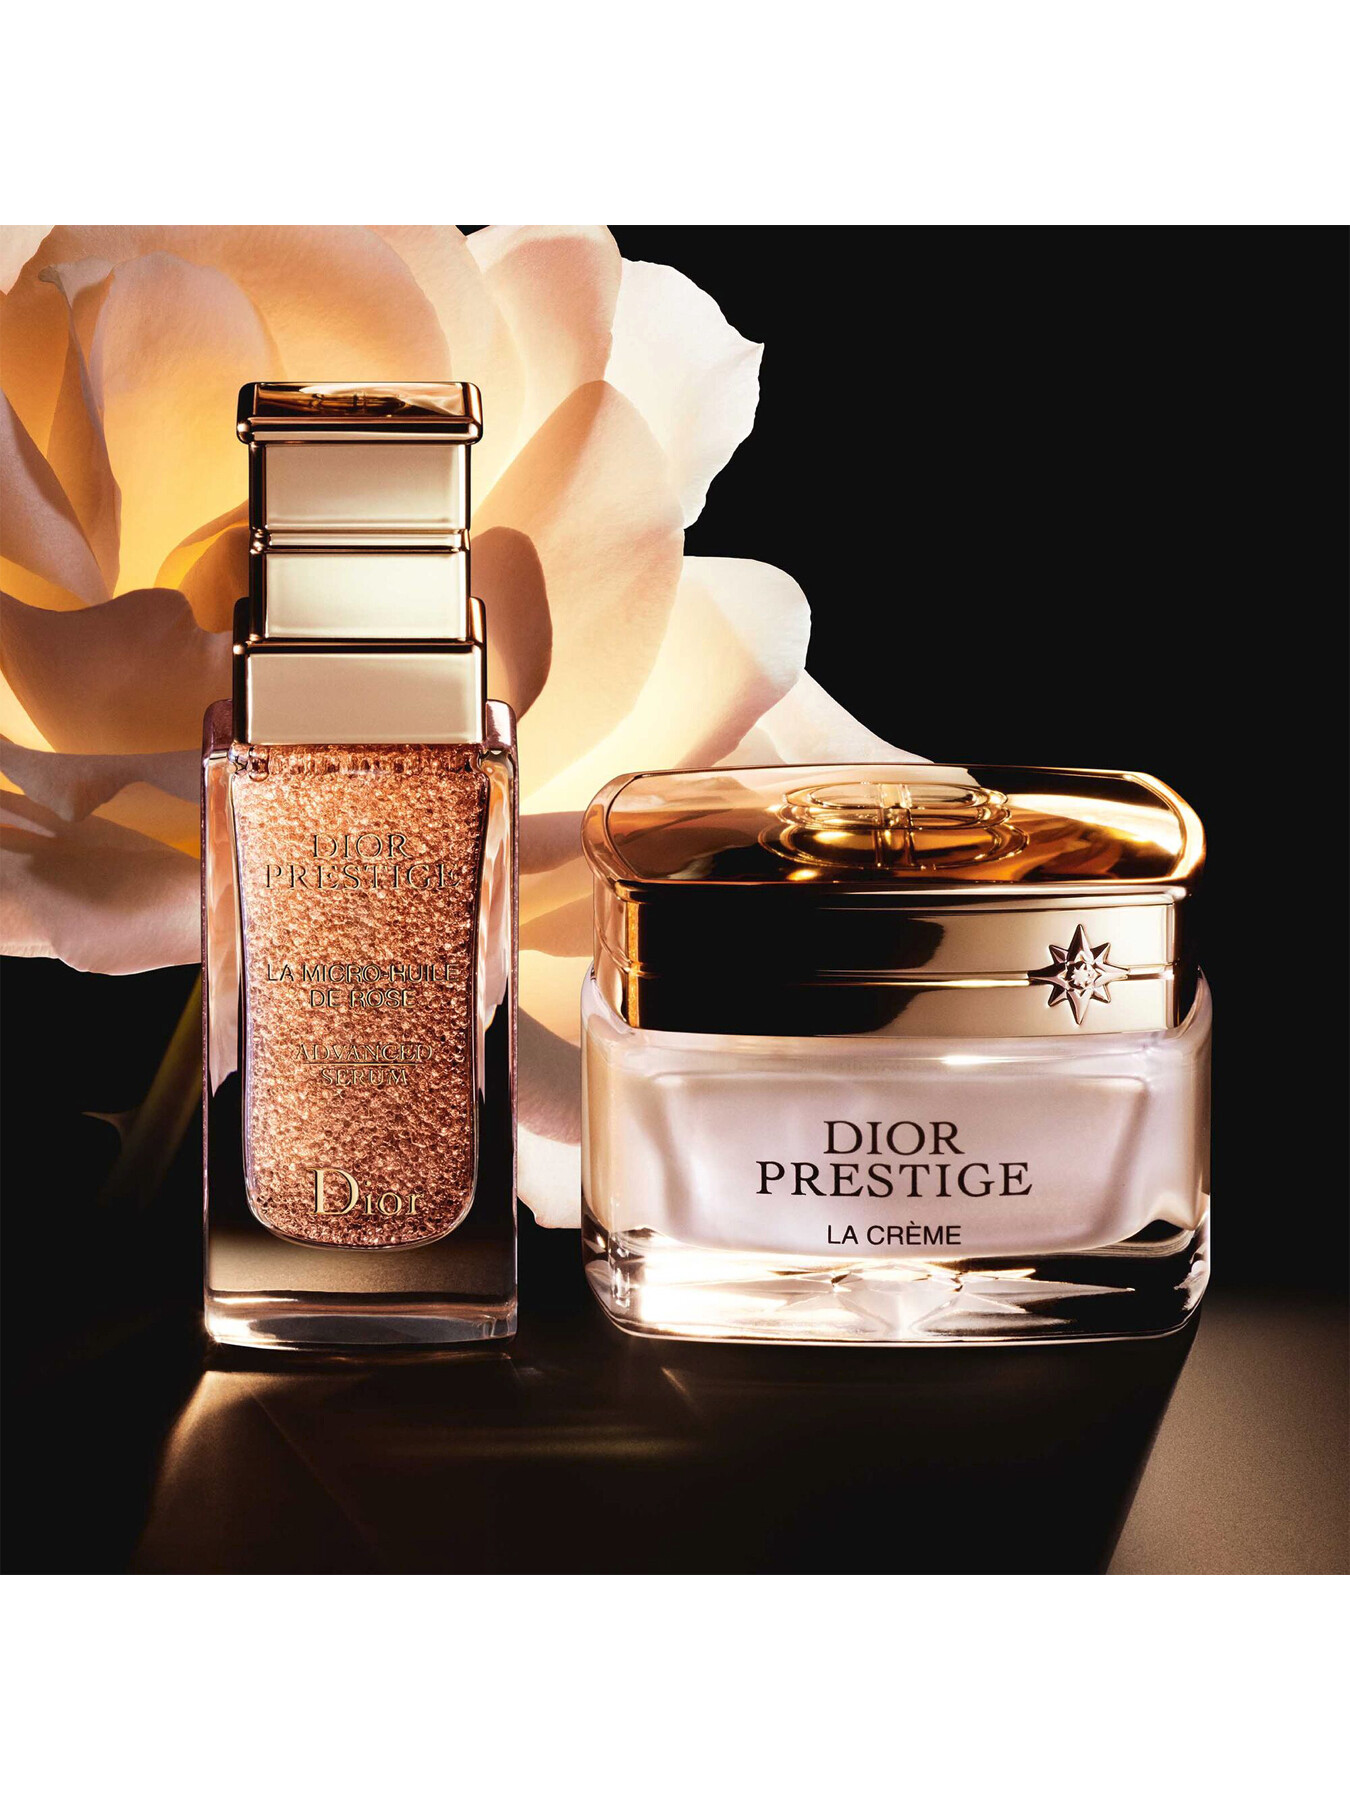 Dior Prestige La MicroHuile de Rose  British Beauty Blogger